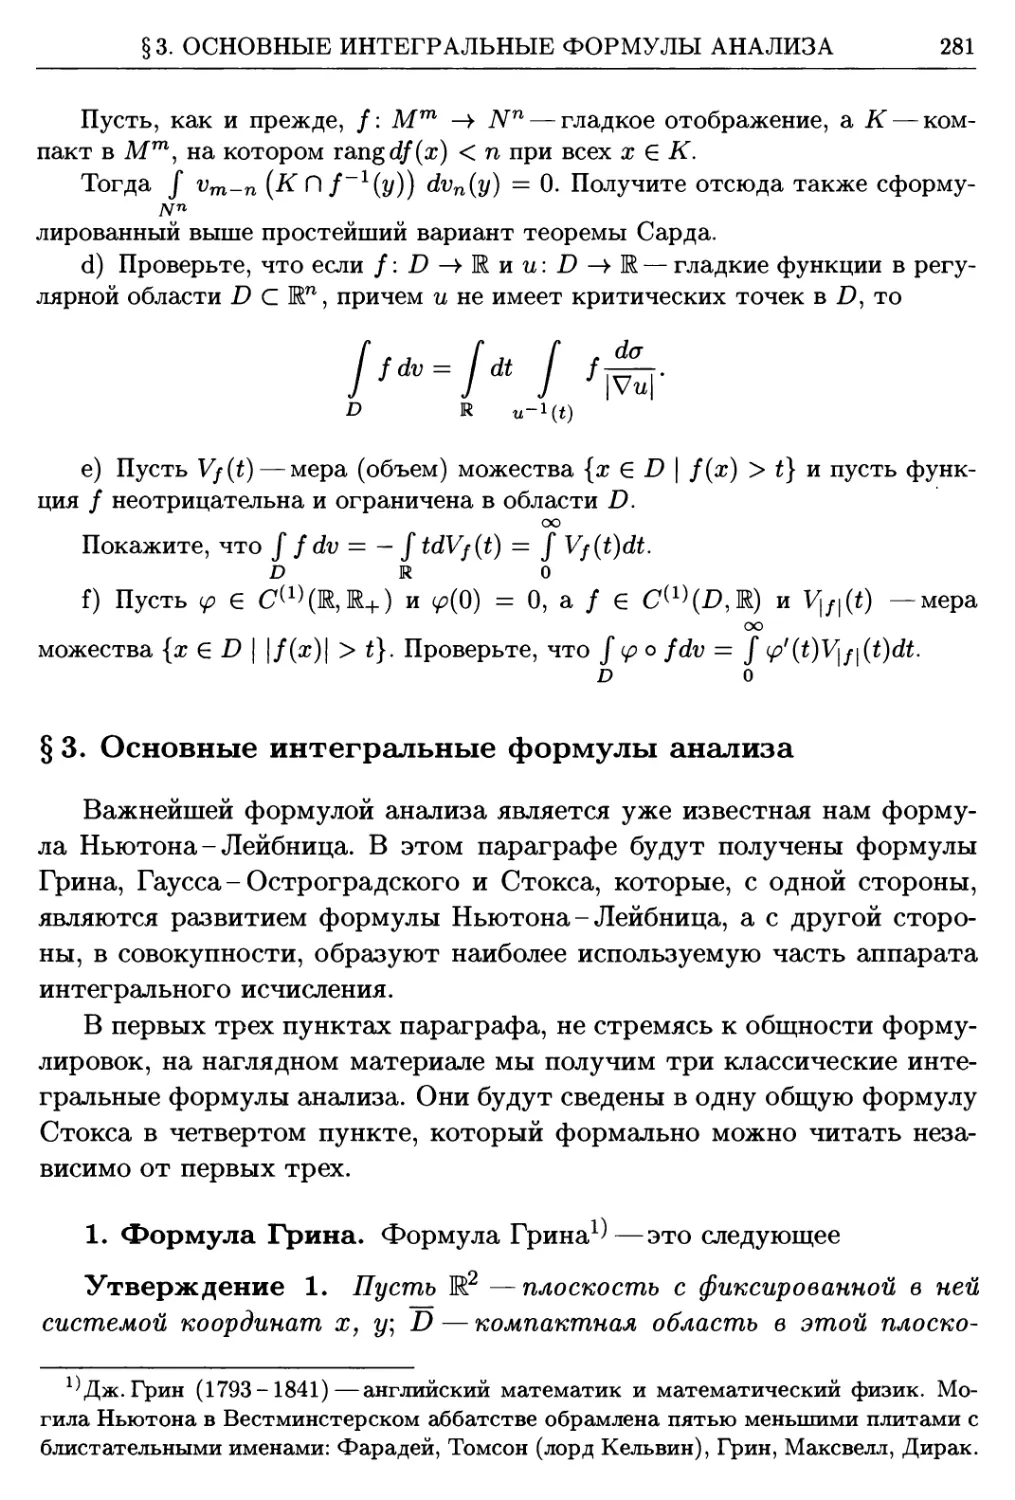 §3. Основные интегральные формулы анализа